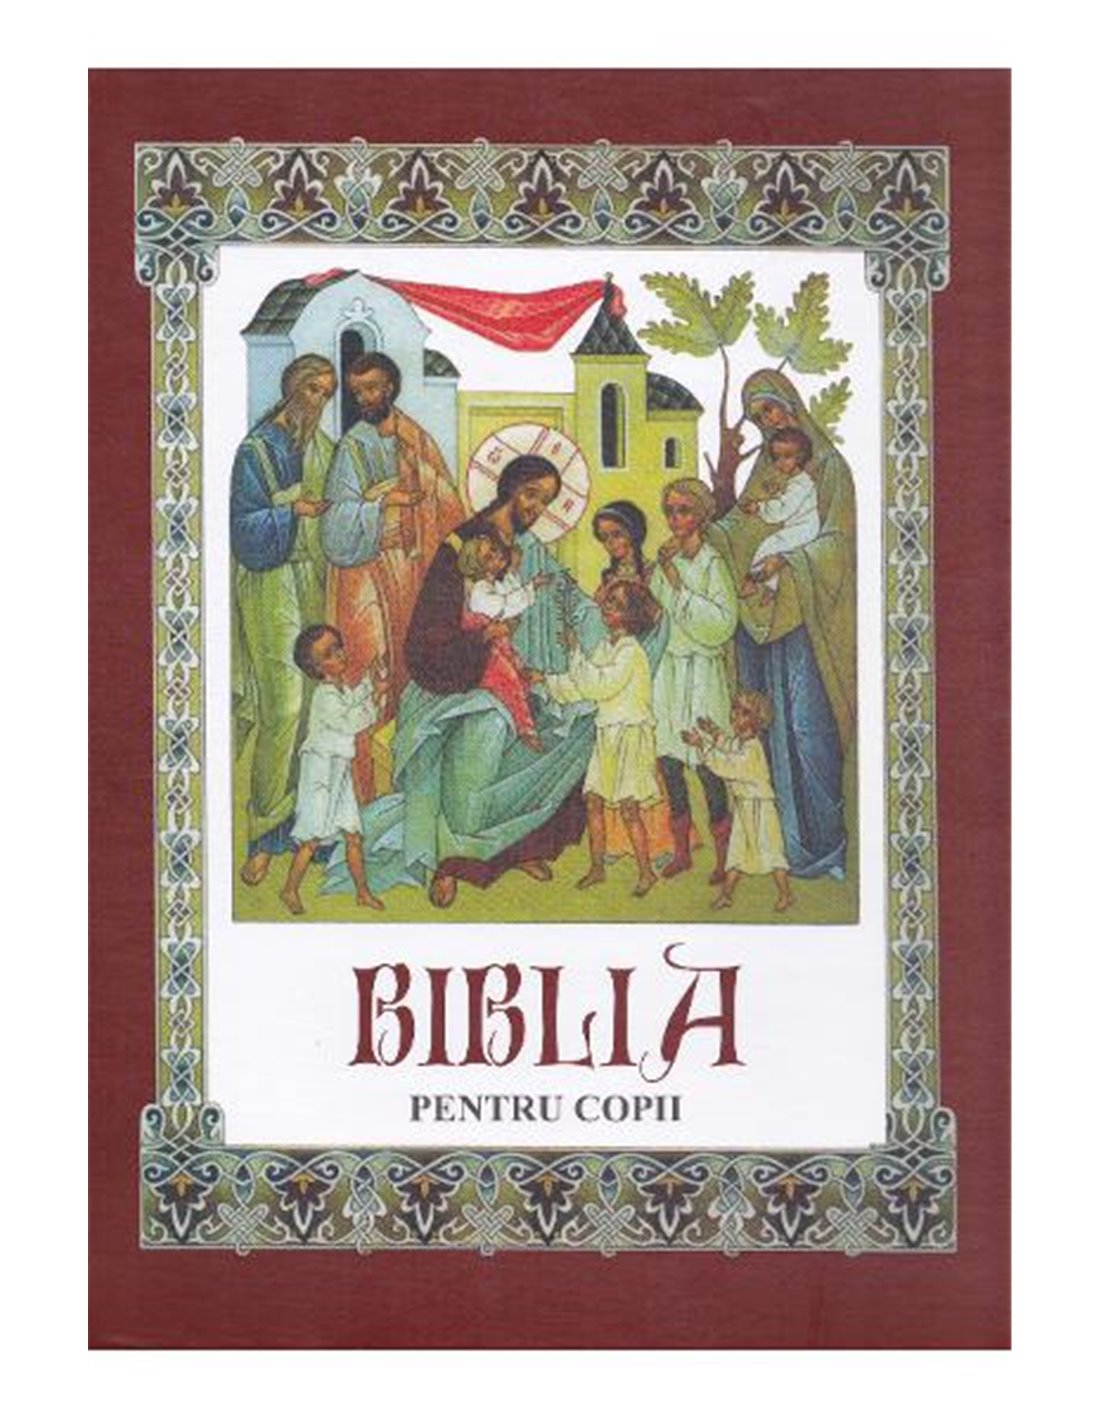 Biblia pentru copii - Chisinau Editura Fratia Misionara Ortodoxa